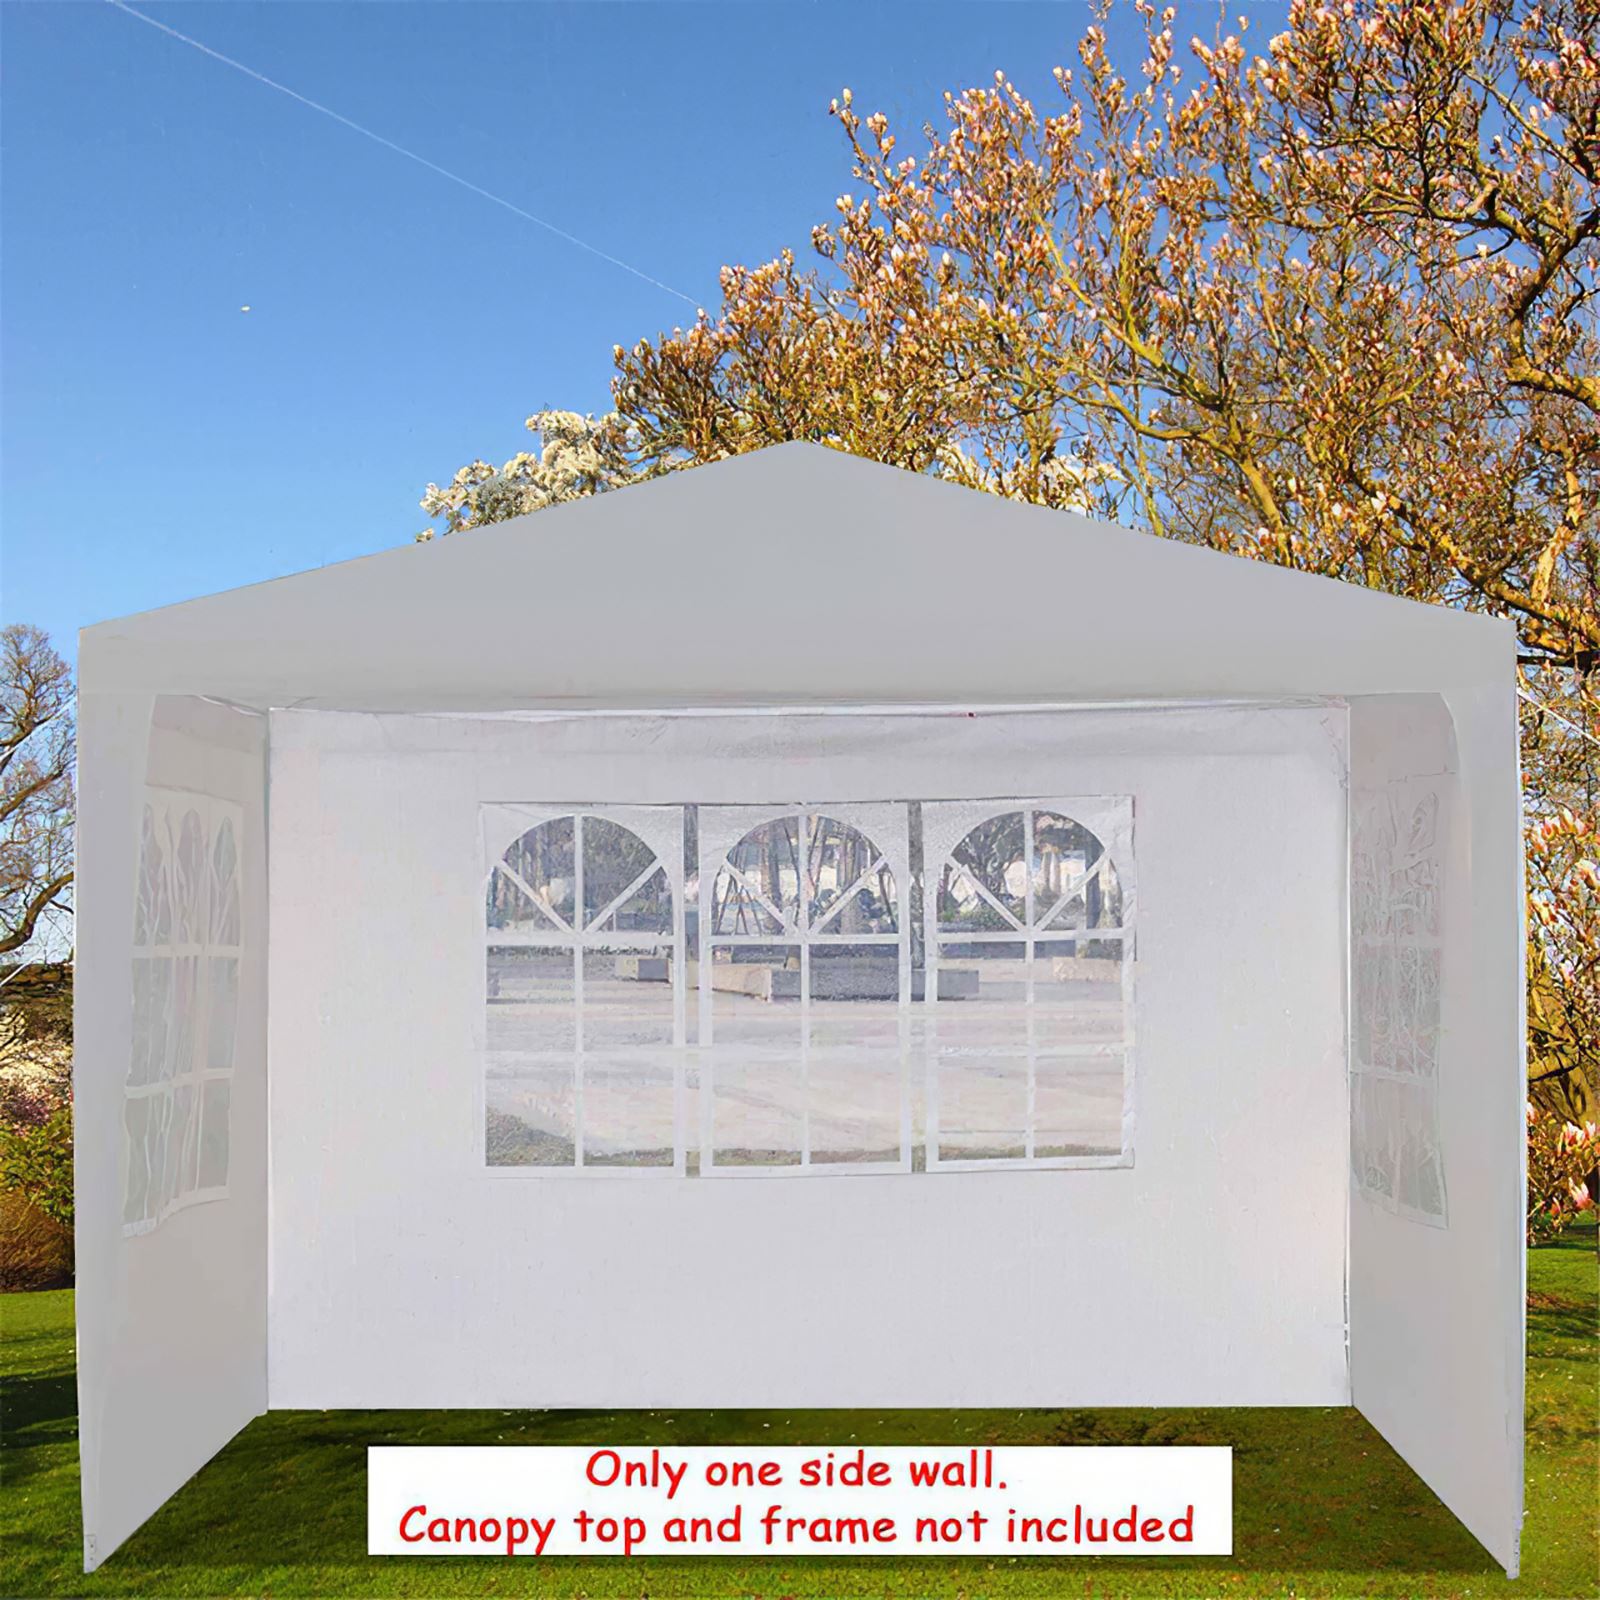 Vinkel sammenklappeligt skur telt picnic udendørs vandtæt baldakin skærm ly transportabel telt pavillon uden beslag